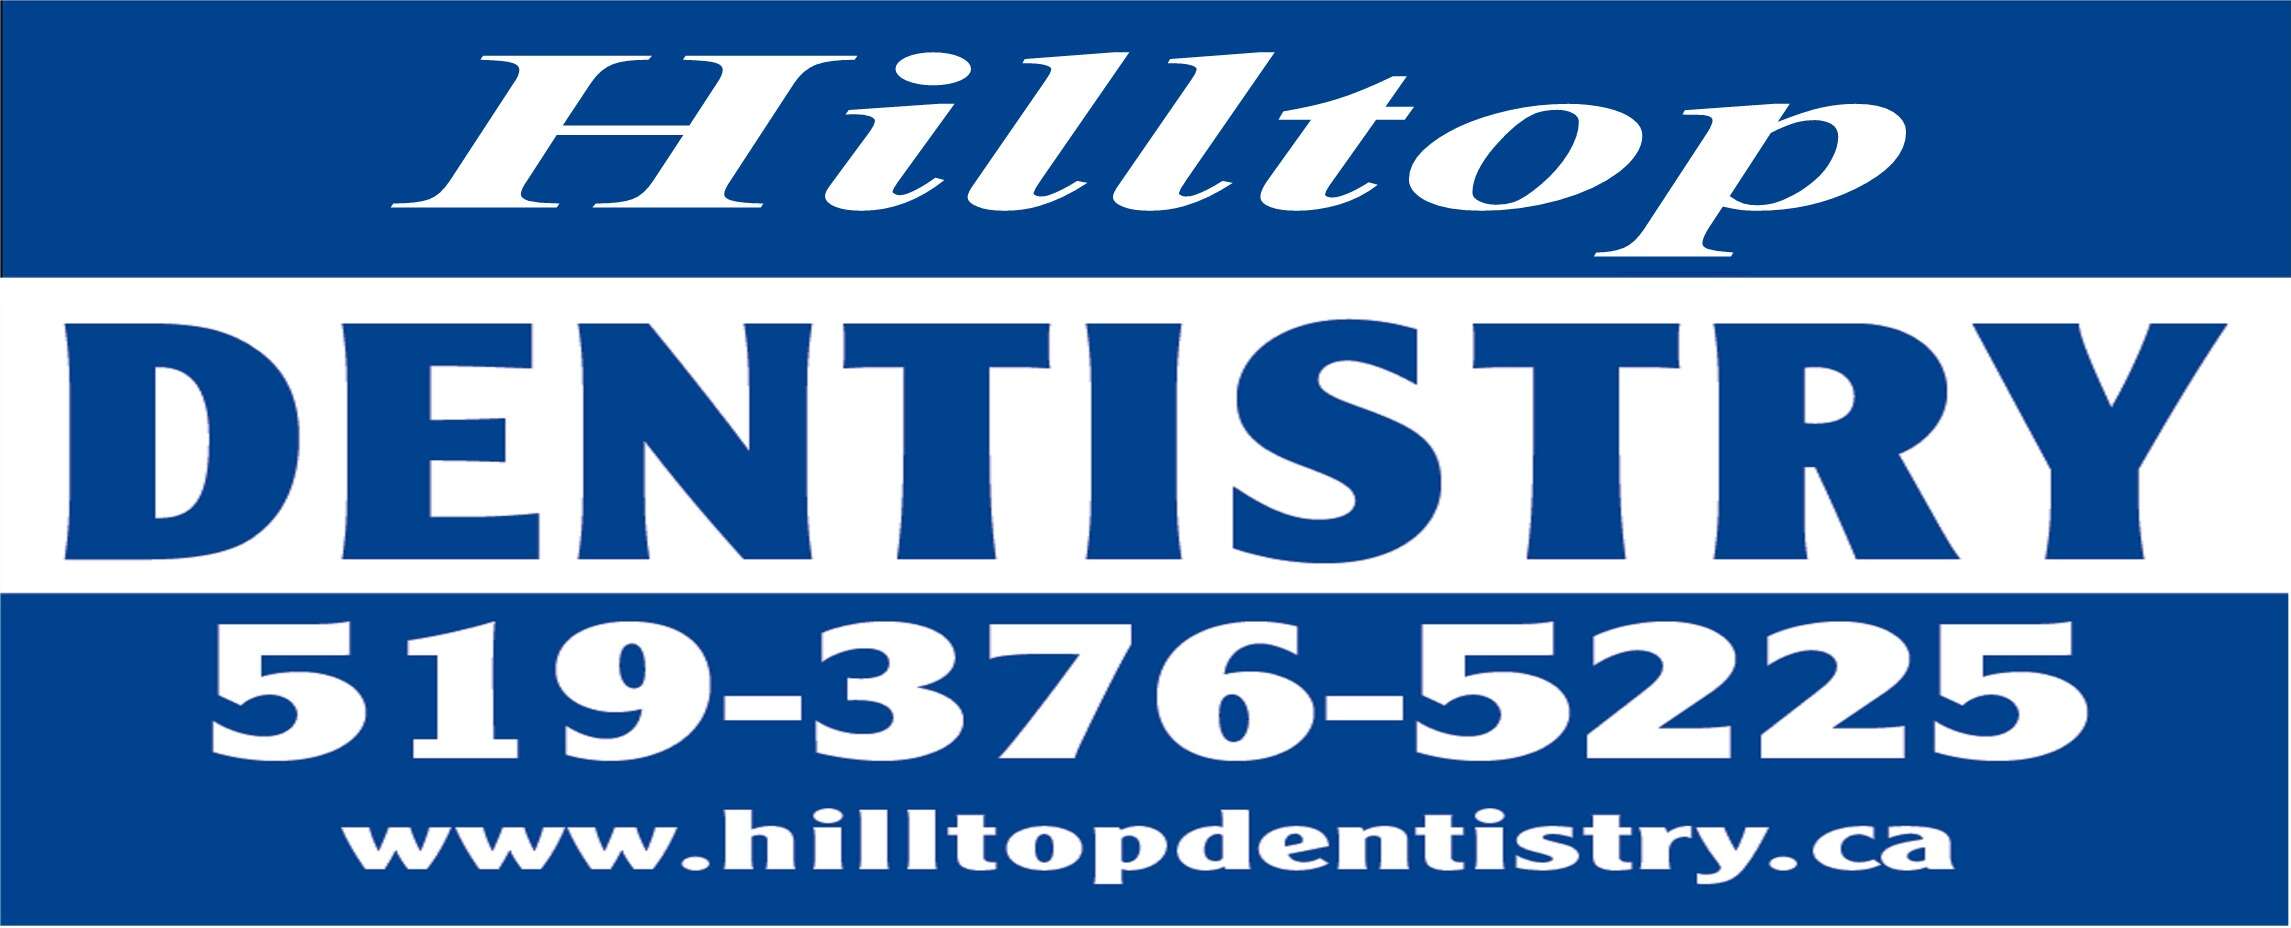 Hilltop Dentistry